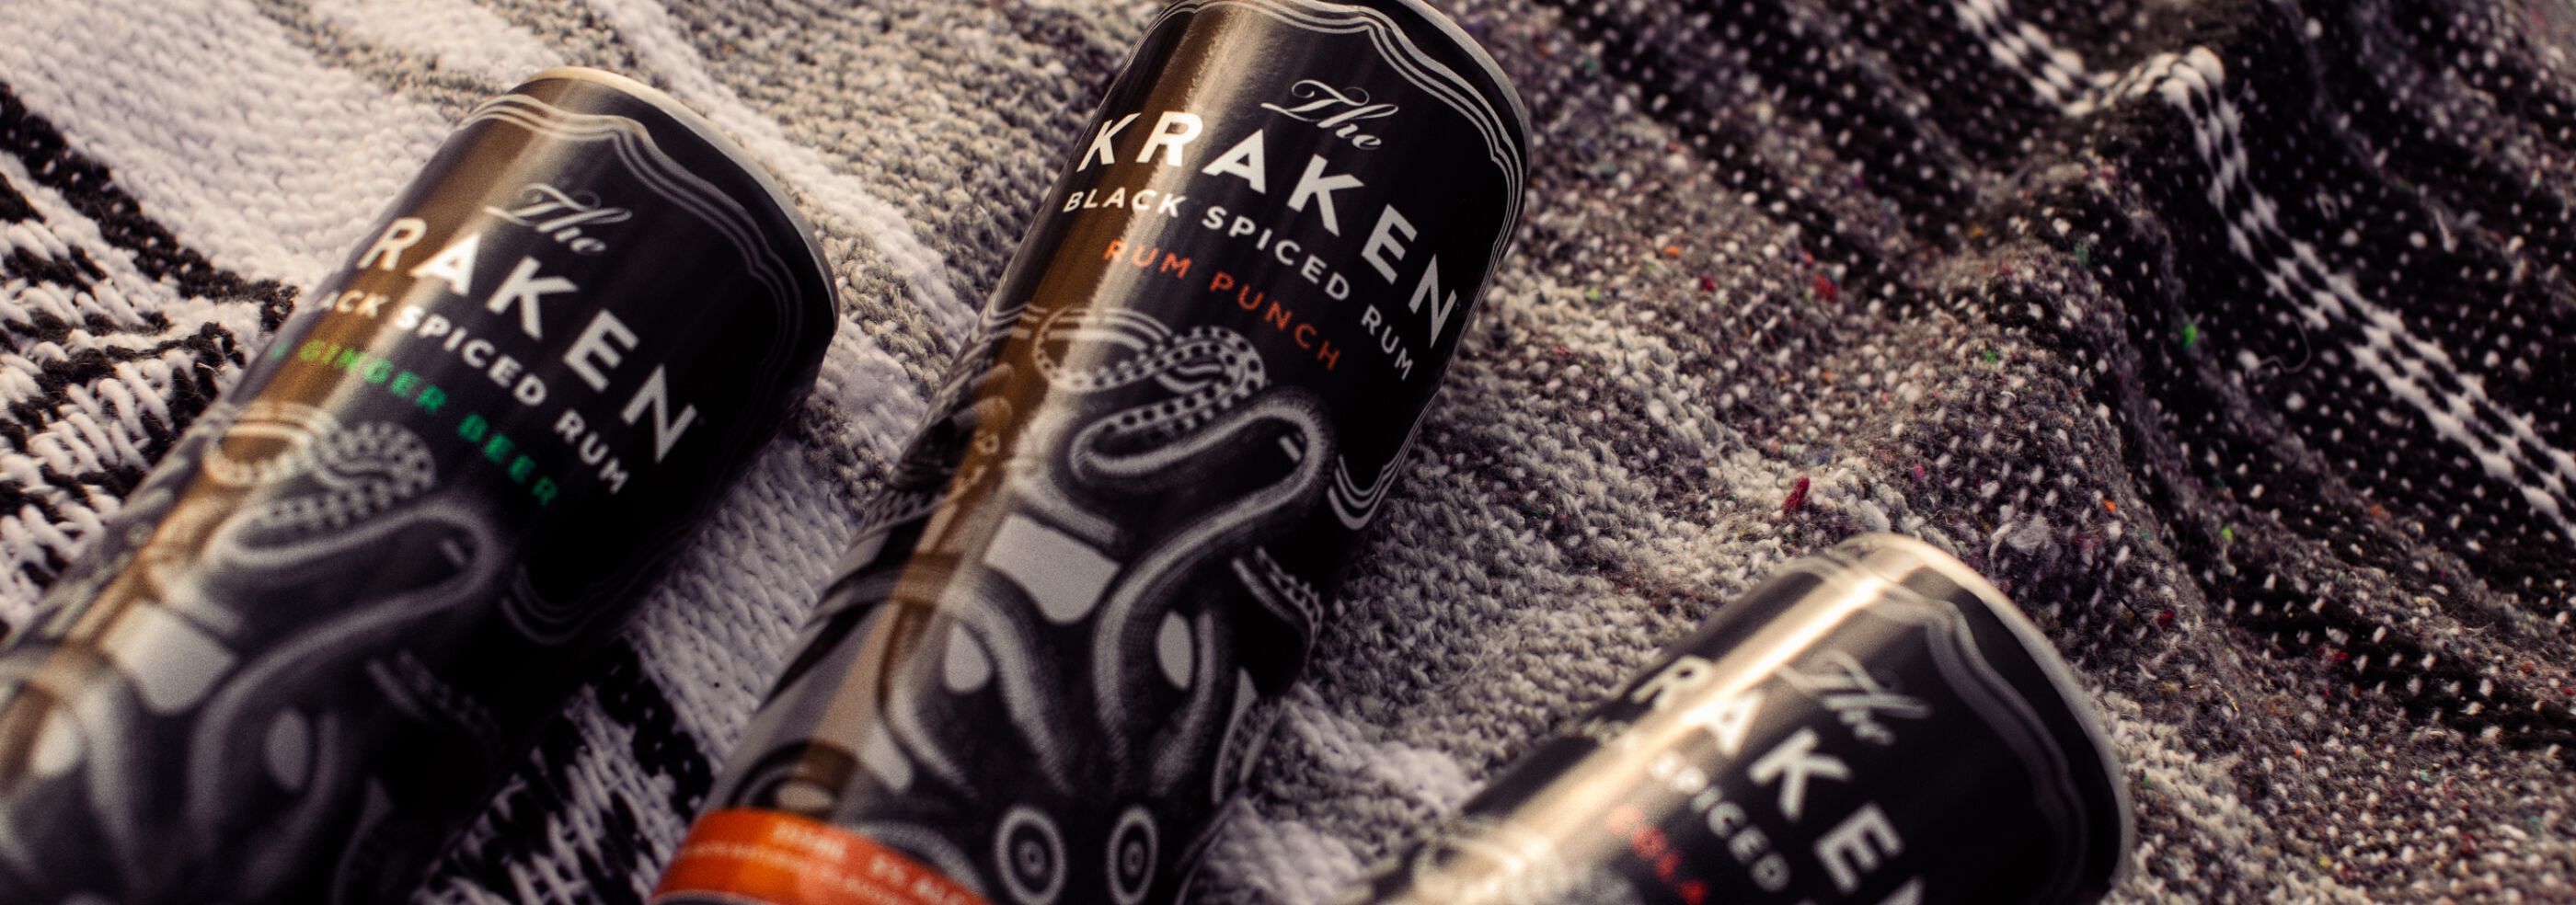 The Kraken Canned Cocktails on a picnic blanket